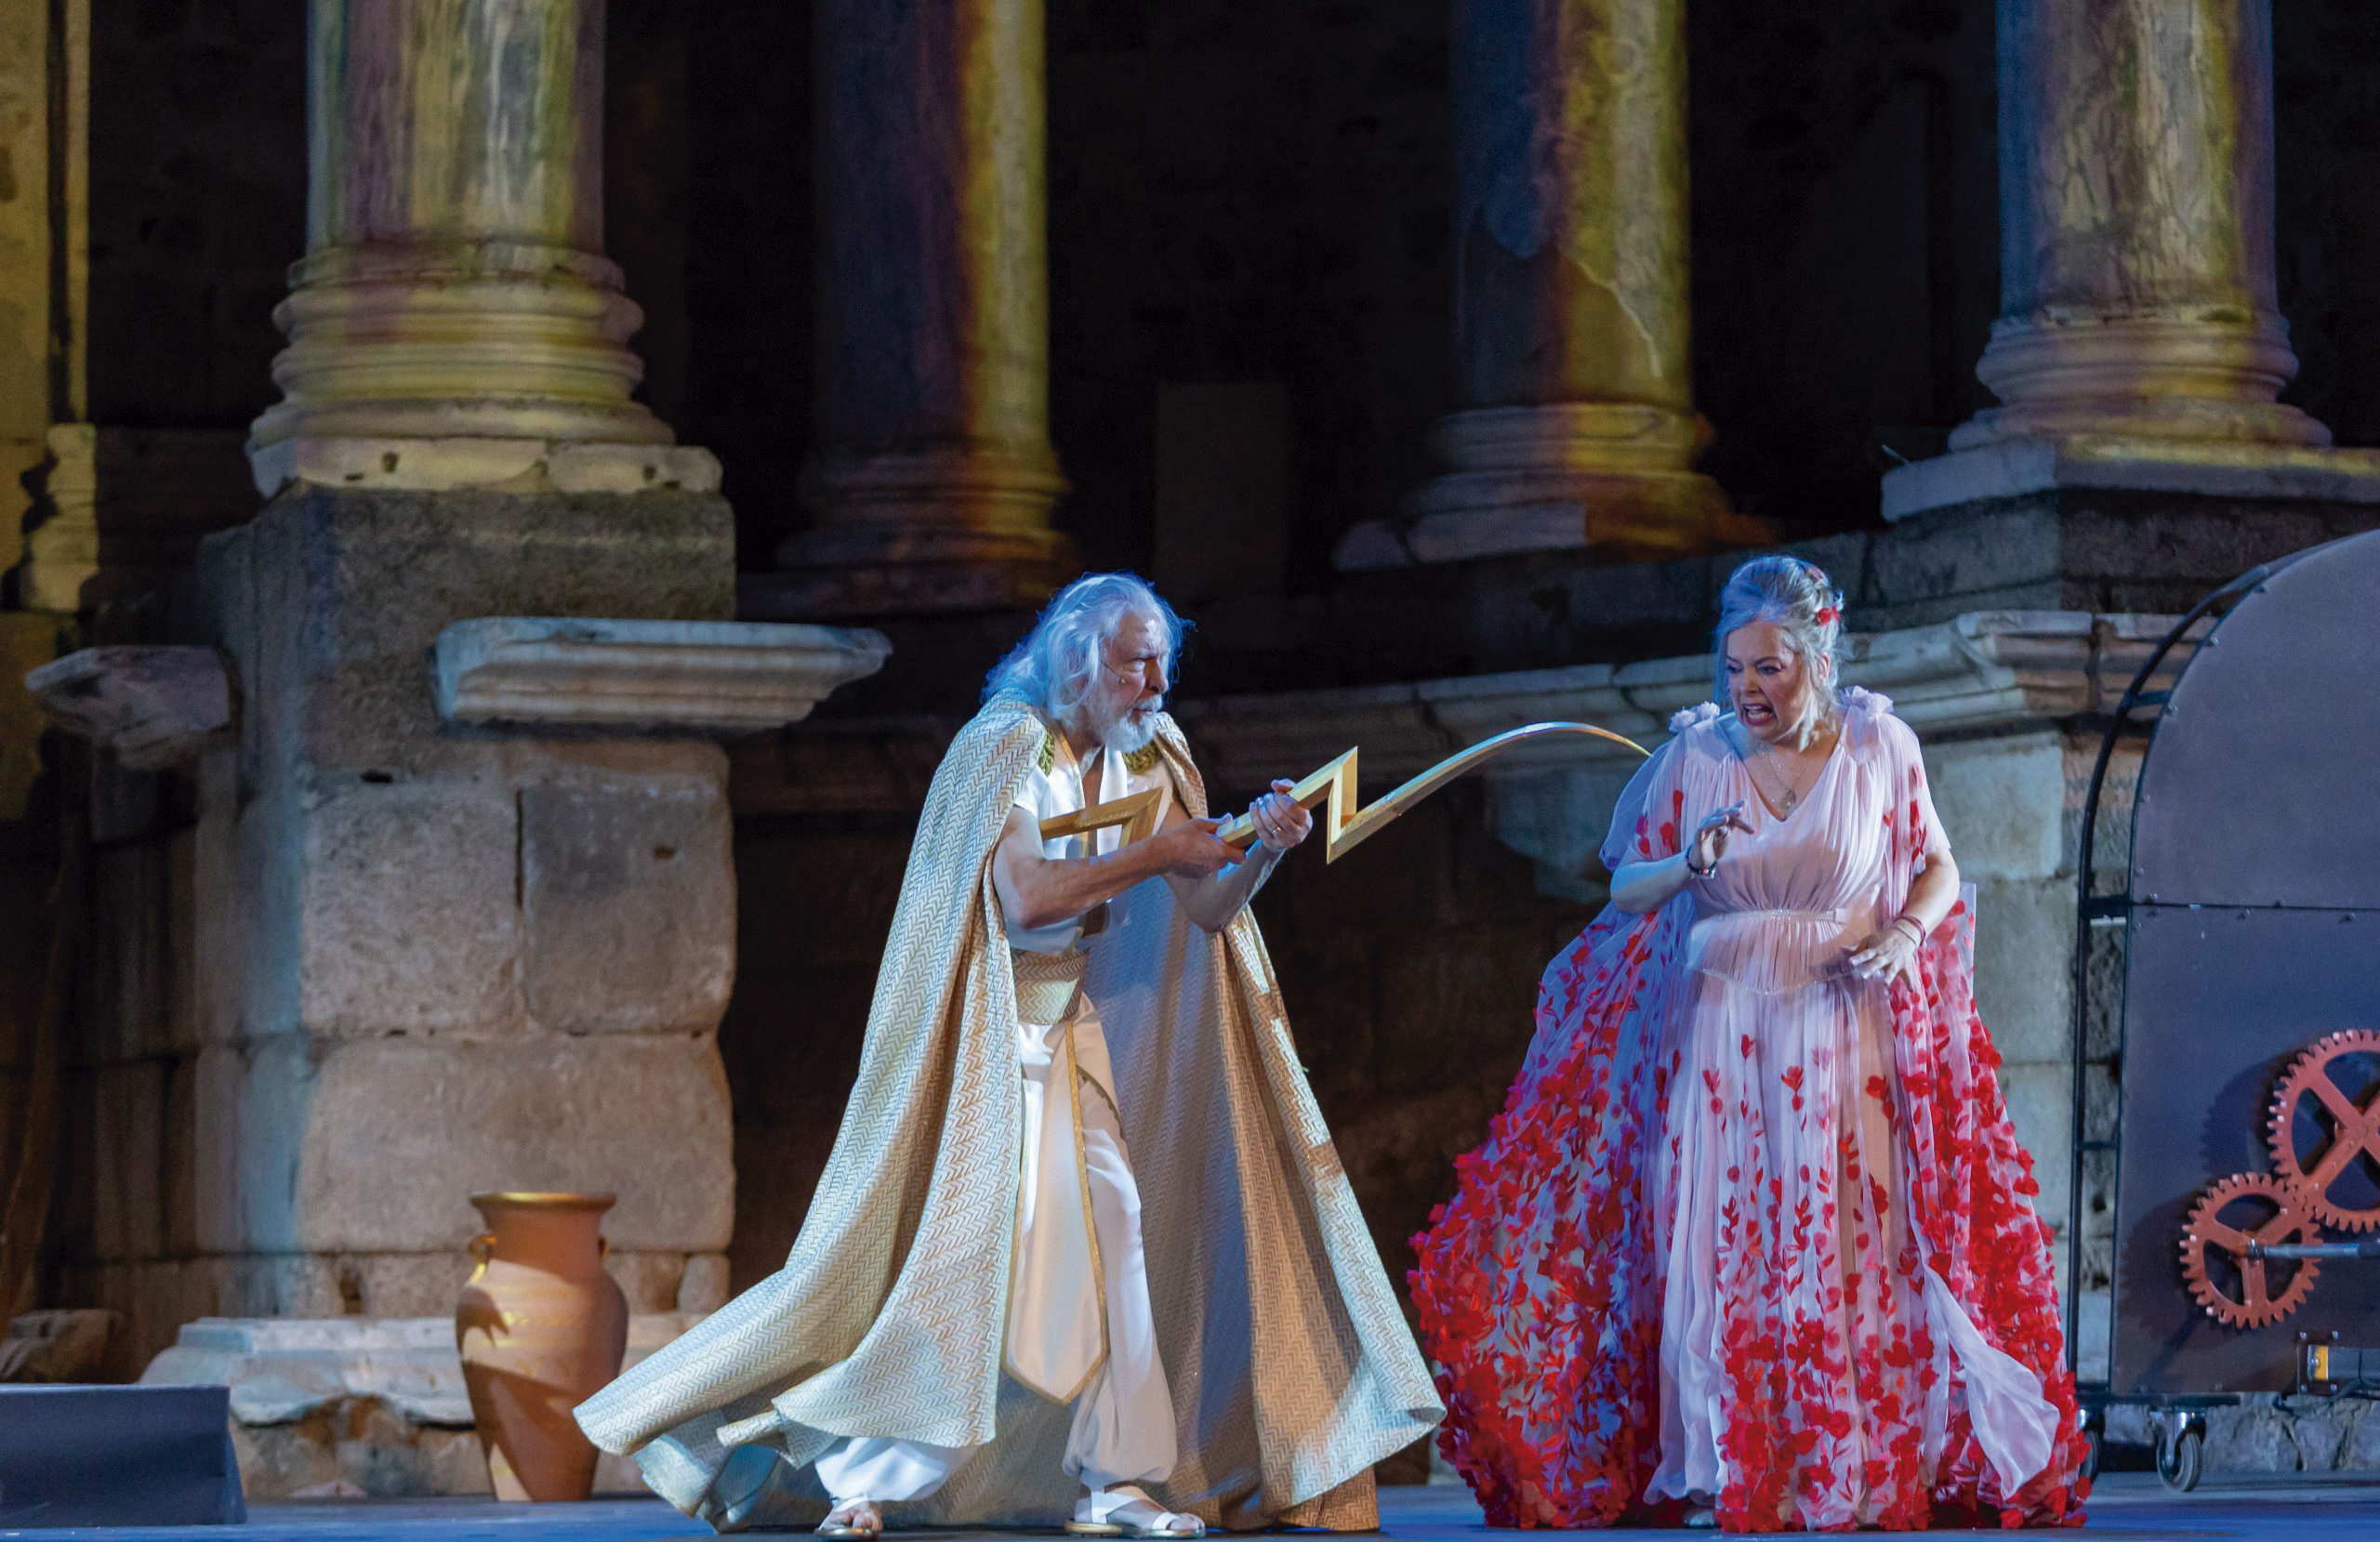 Emma Ozores en una escena de la obra teatral "Zeus" en el teatro romano de Mérida